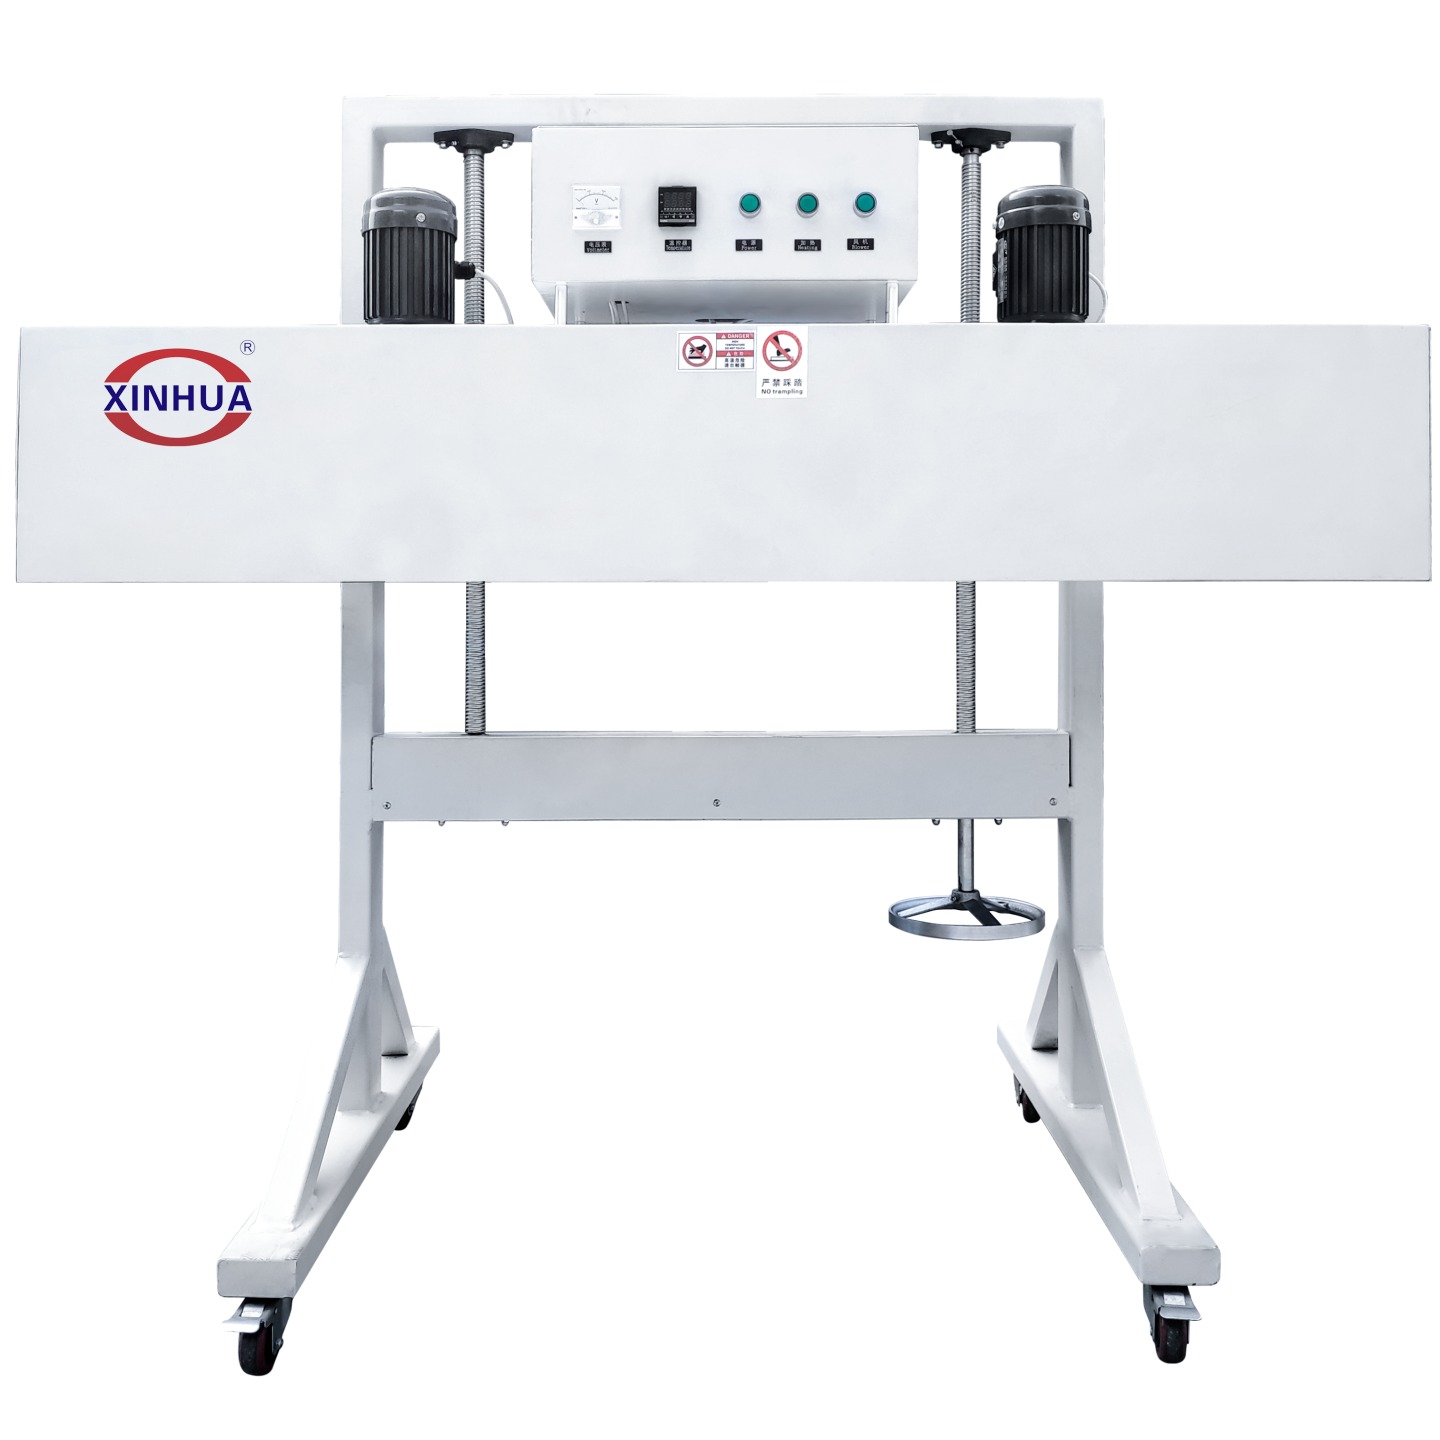 鑫化机械贴标机厂家供应XH-H1500电热收缩炉 热收缩标签设备 套标辅助设备